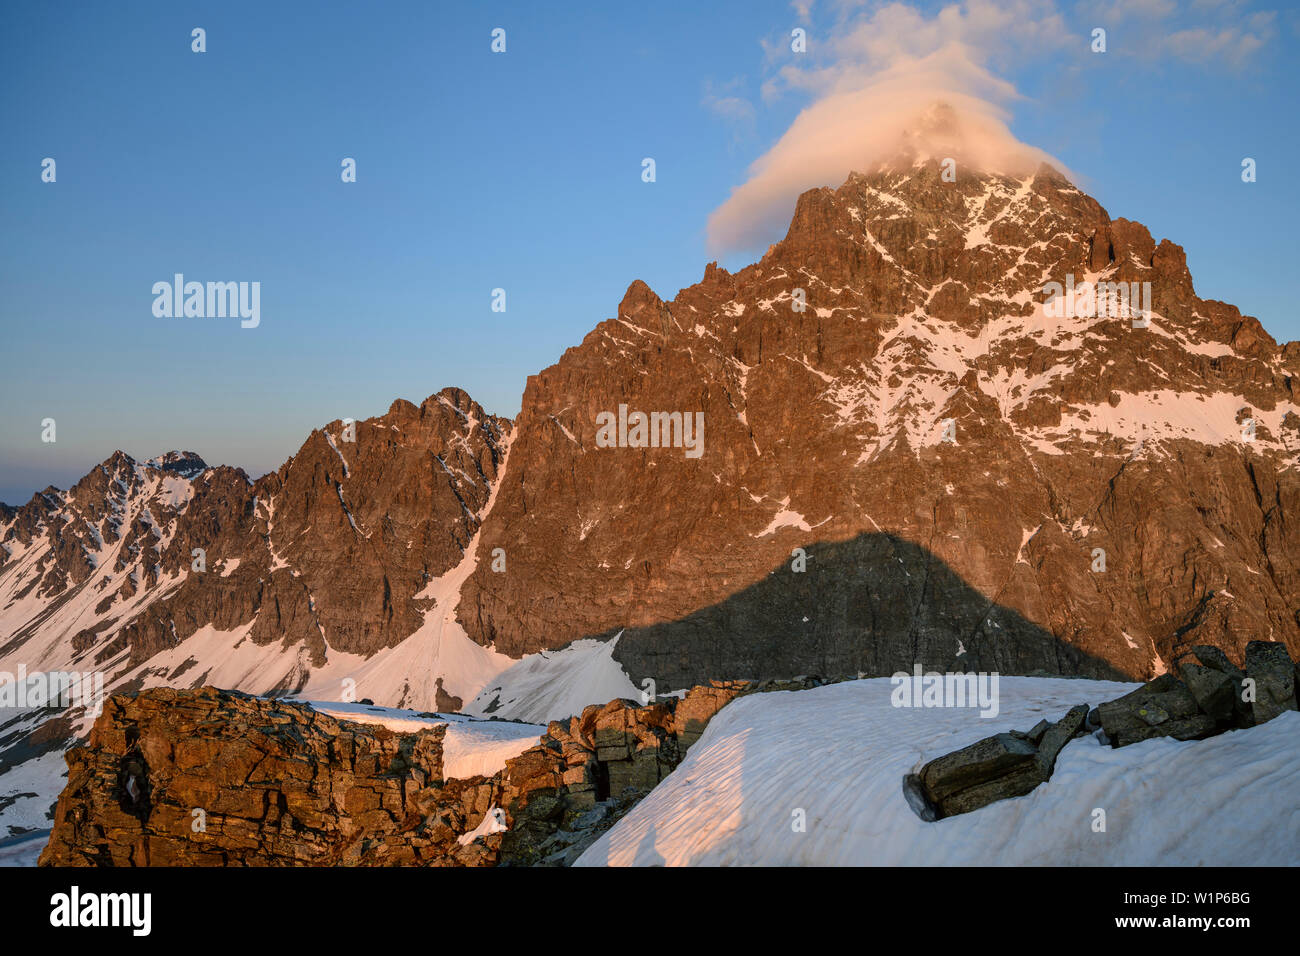 Sommet du Mont Viso couverts dans un nuage, au Viso Mozzo, Giro di Monviso, Monte Viso, Mont Viso, Alpes Cottiennes, Piémont, Italie Banque D'Images